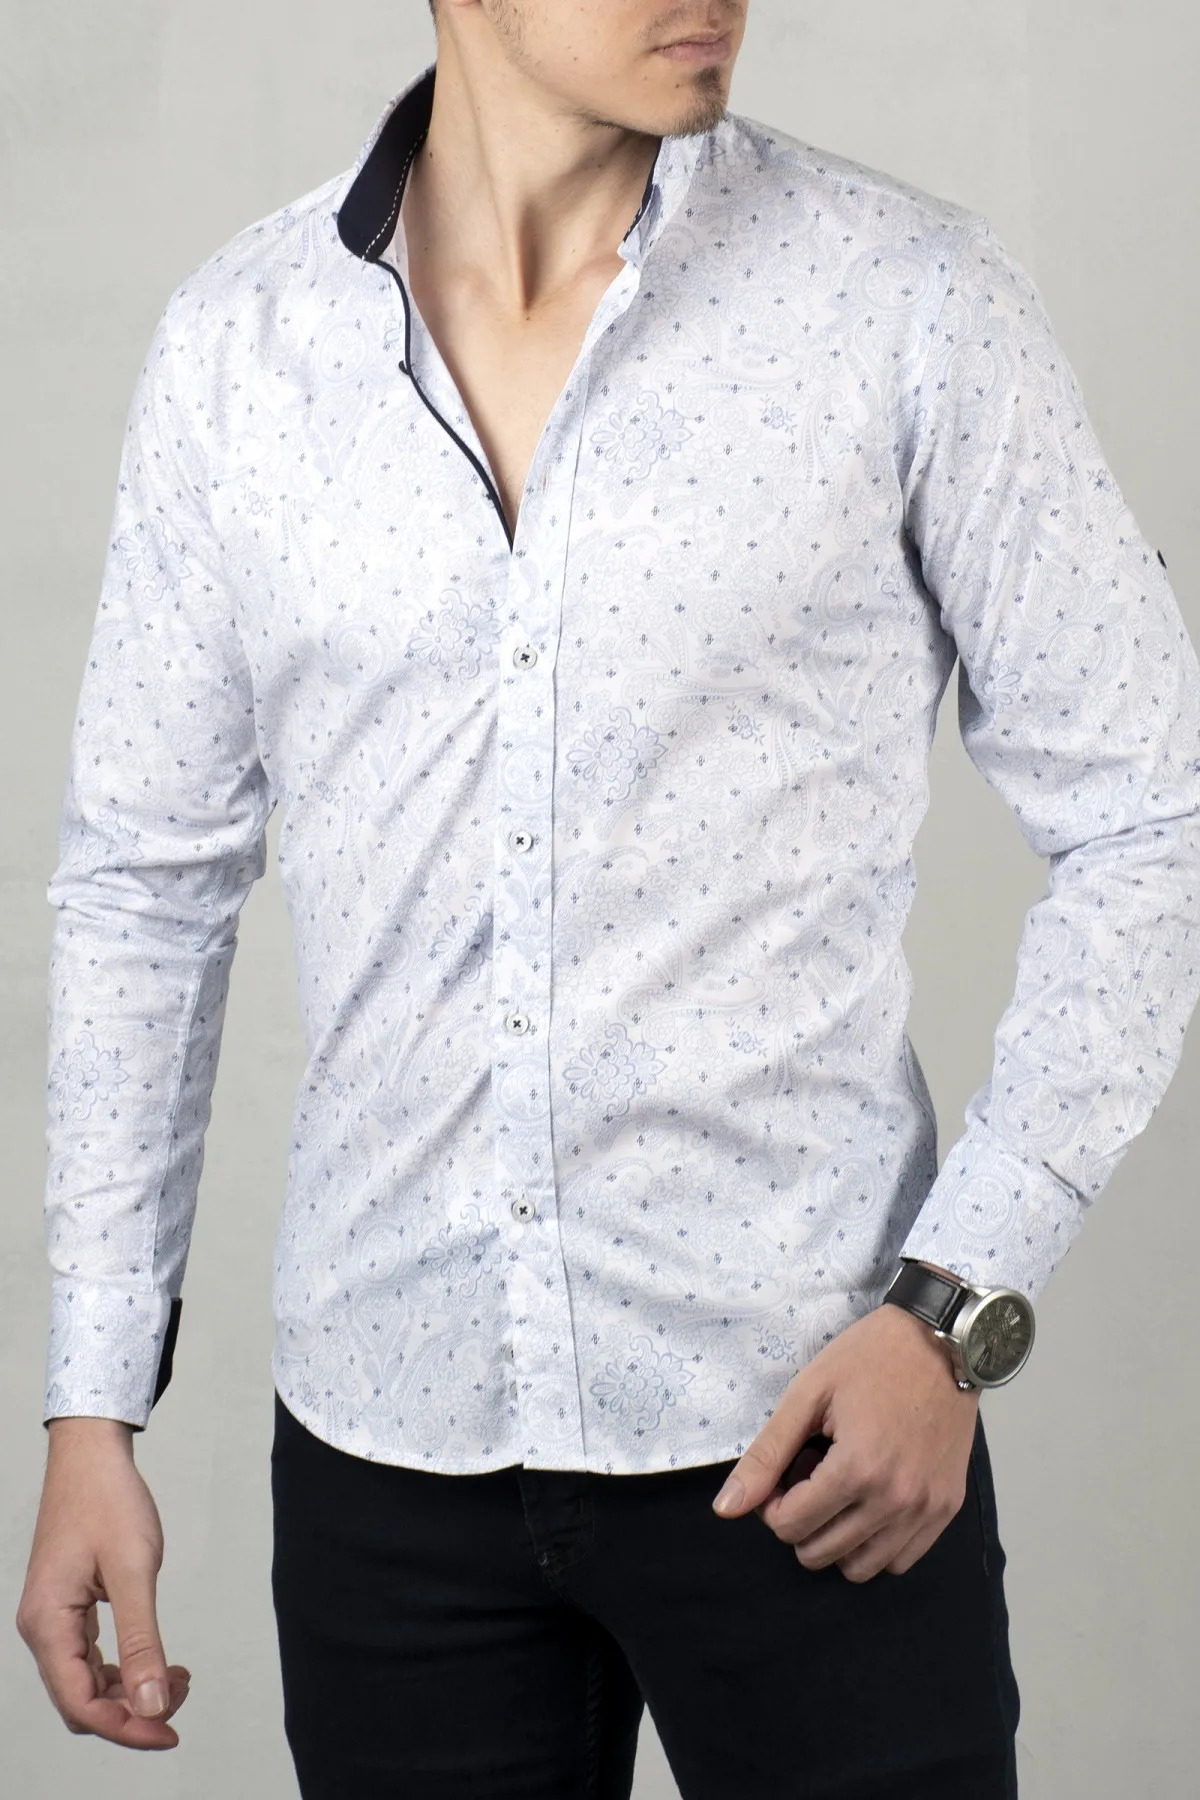 

Белая мужская рубашка DeepSEA, 100 хлопок, с узким узором, с длинным рукавом, весна, лето, Осень, Зима, повседневная, деловая, 2005019